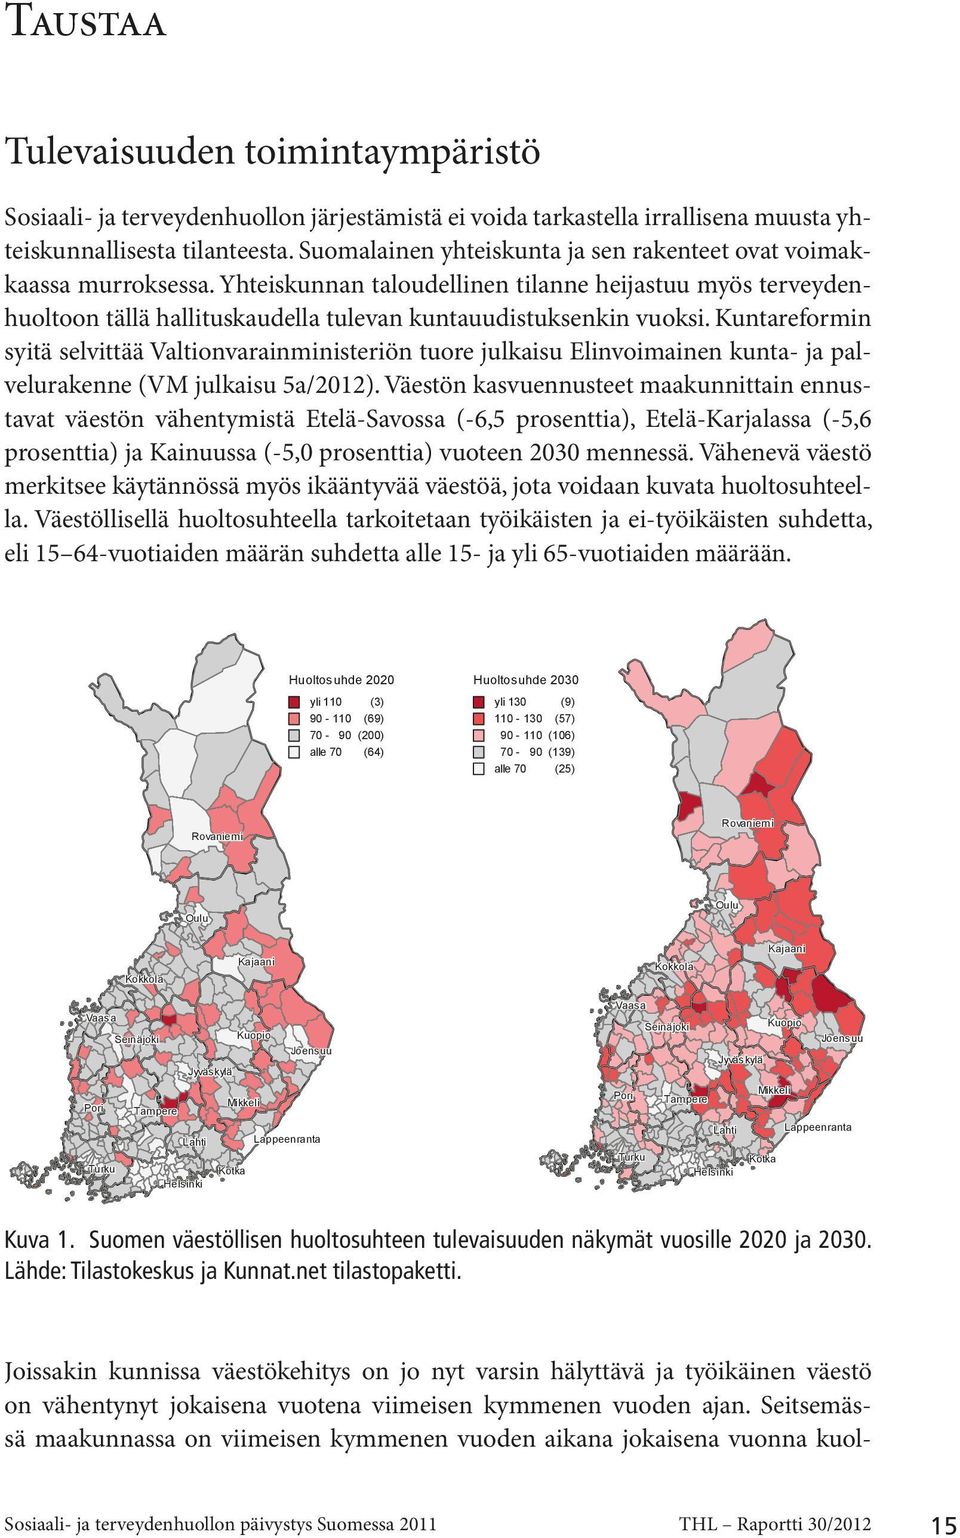 Kuntareformin syitä selvittää Valtionvarainministeriön tuore julkaisu Elinvoimainen kunta- ja palvelurakenne (VM julkaisu 5a/2012).